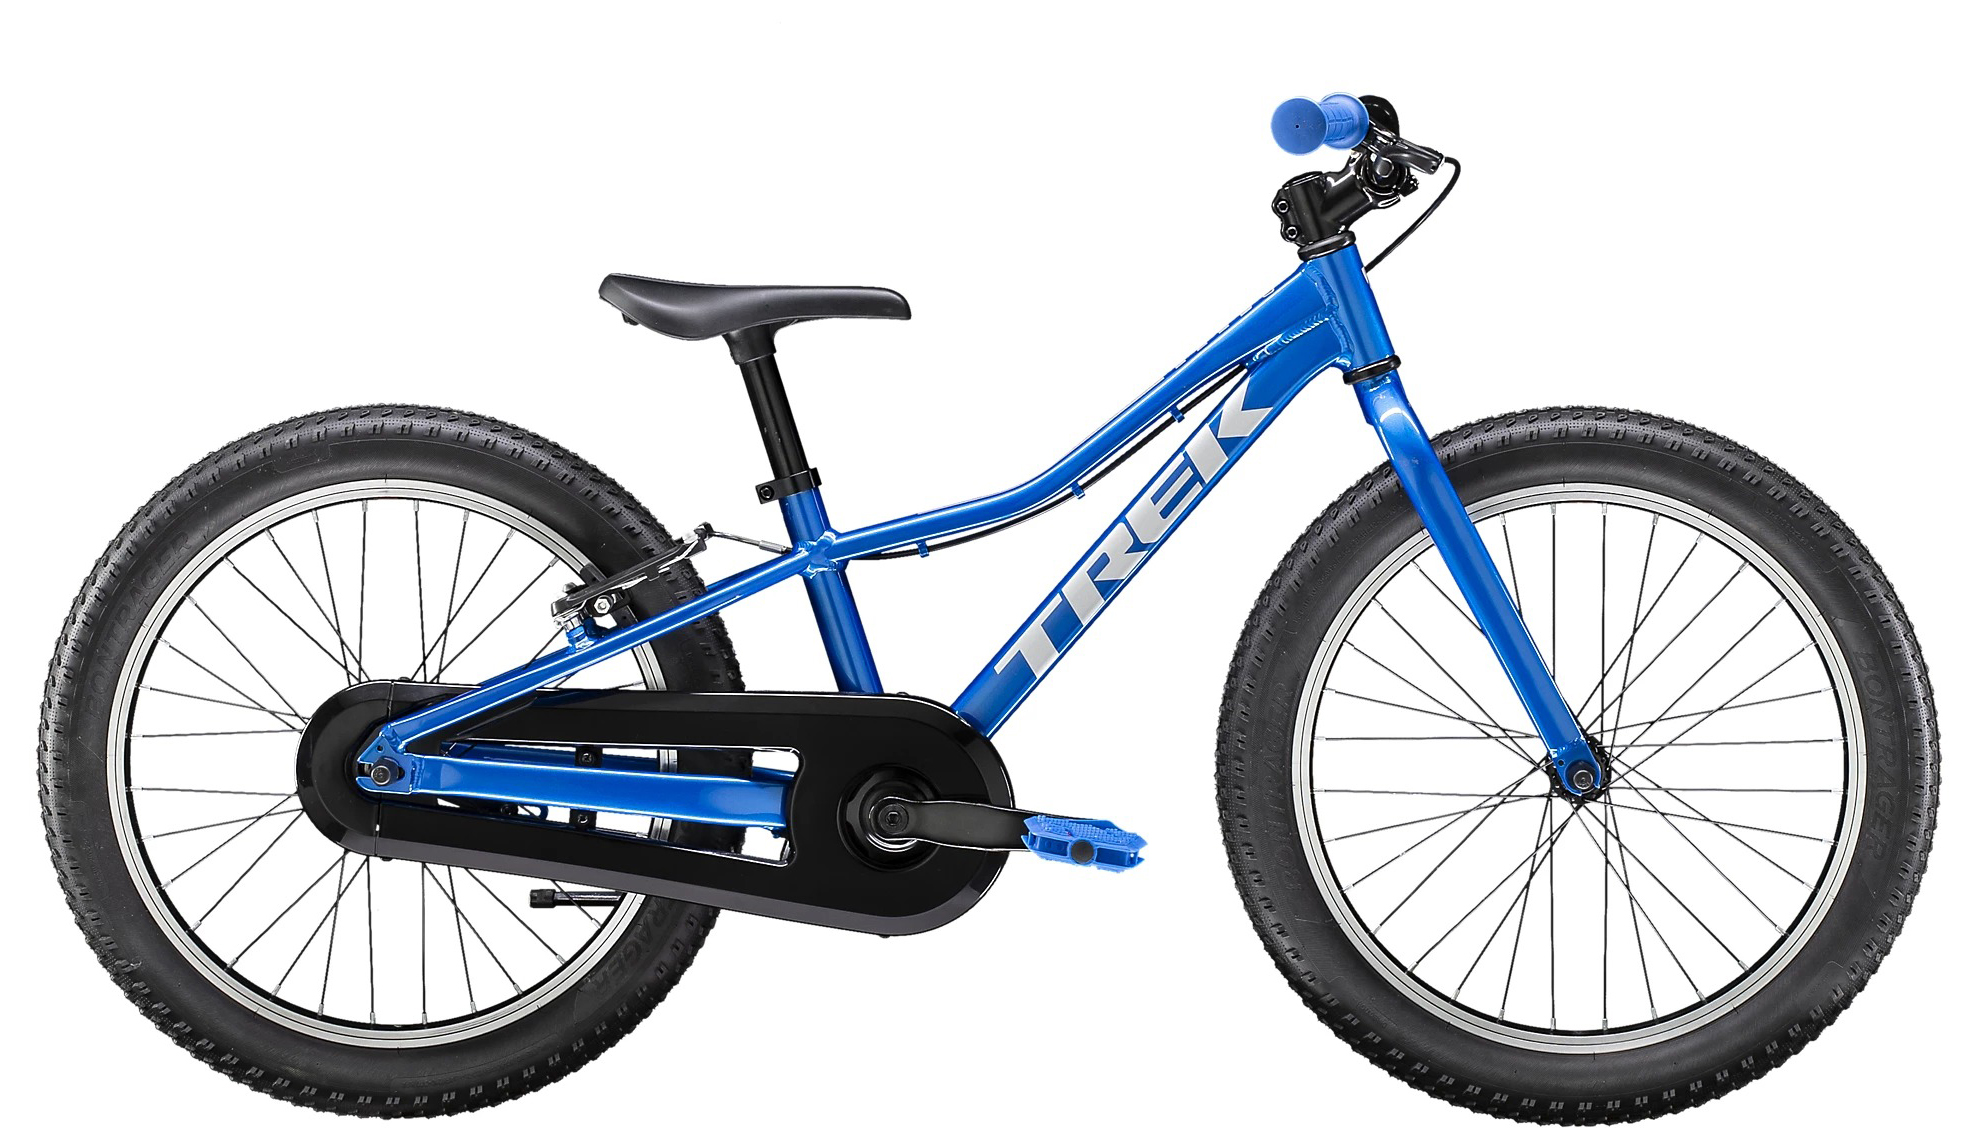  Отзывы о Детском велосипеде Trek Precaliber 20 CST B S 2020